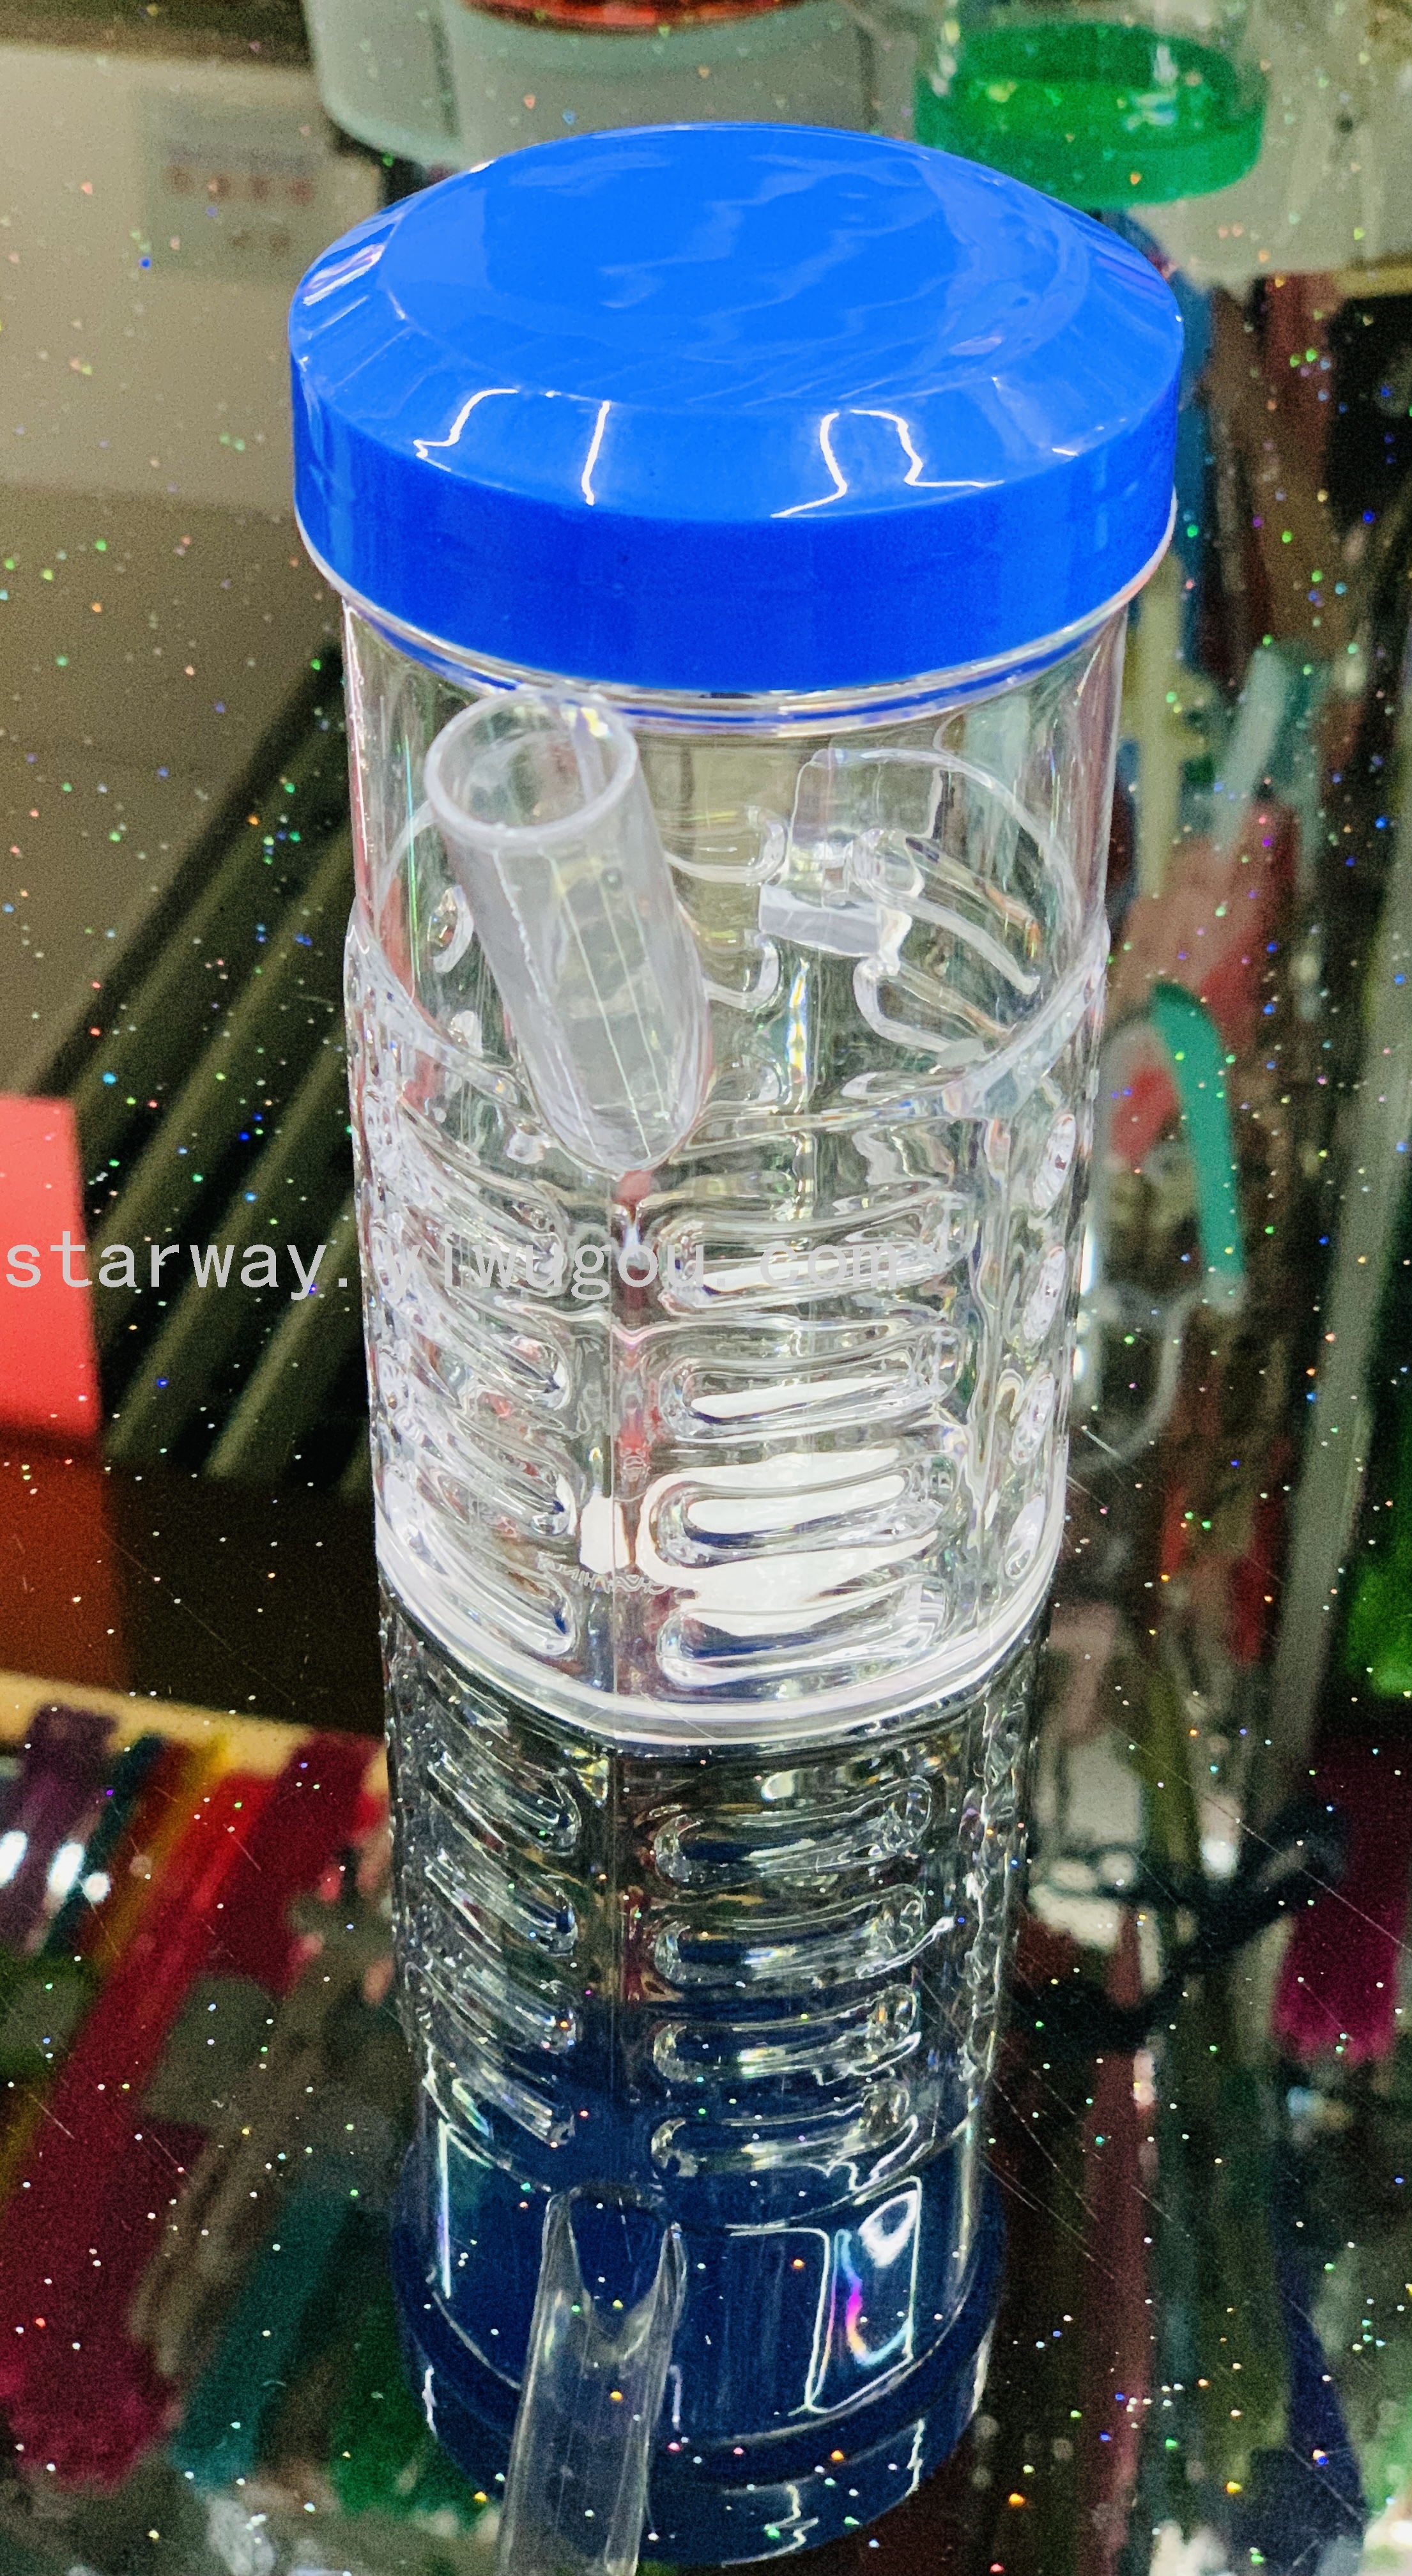 果汁杯 洗漱杯 塑料水杯 透明塑料杯 卡通塑料杯 混色塑料杯